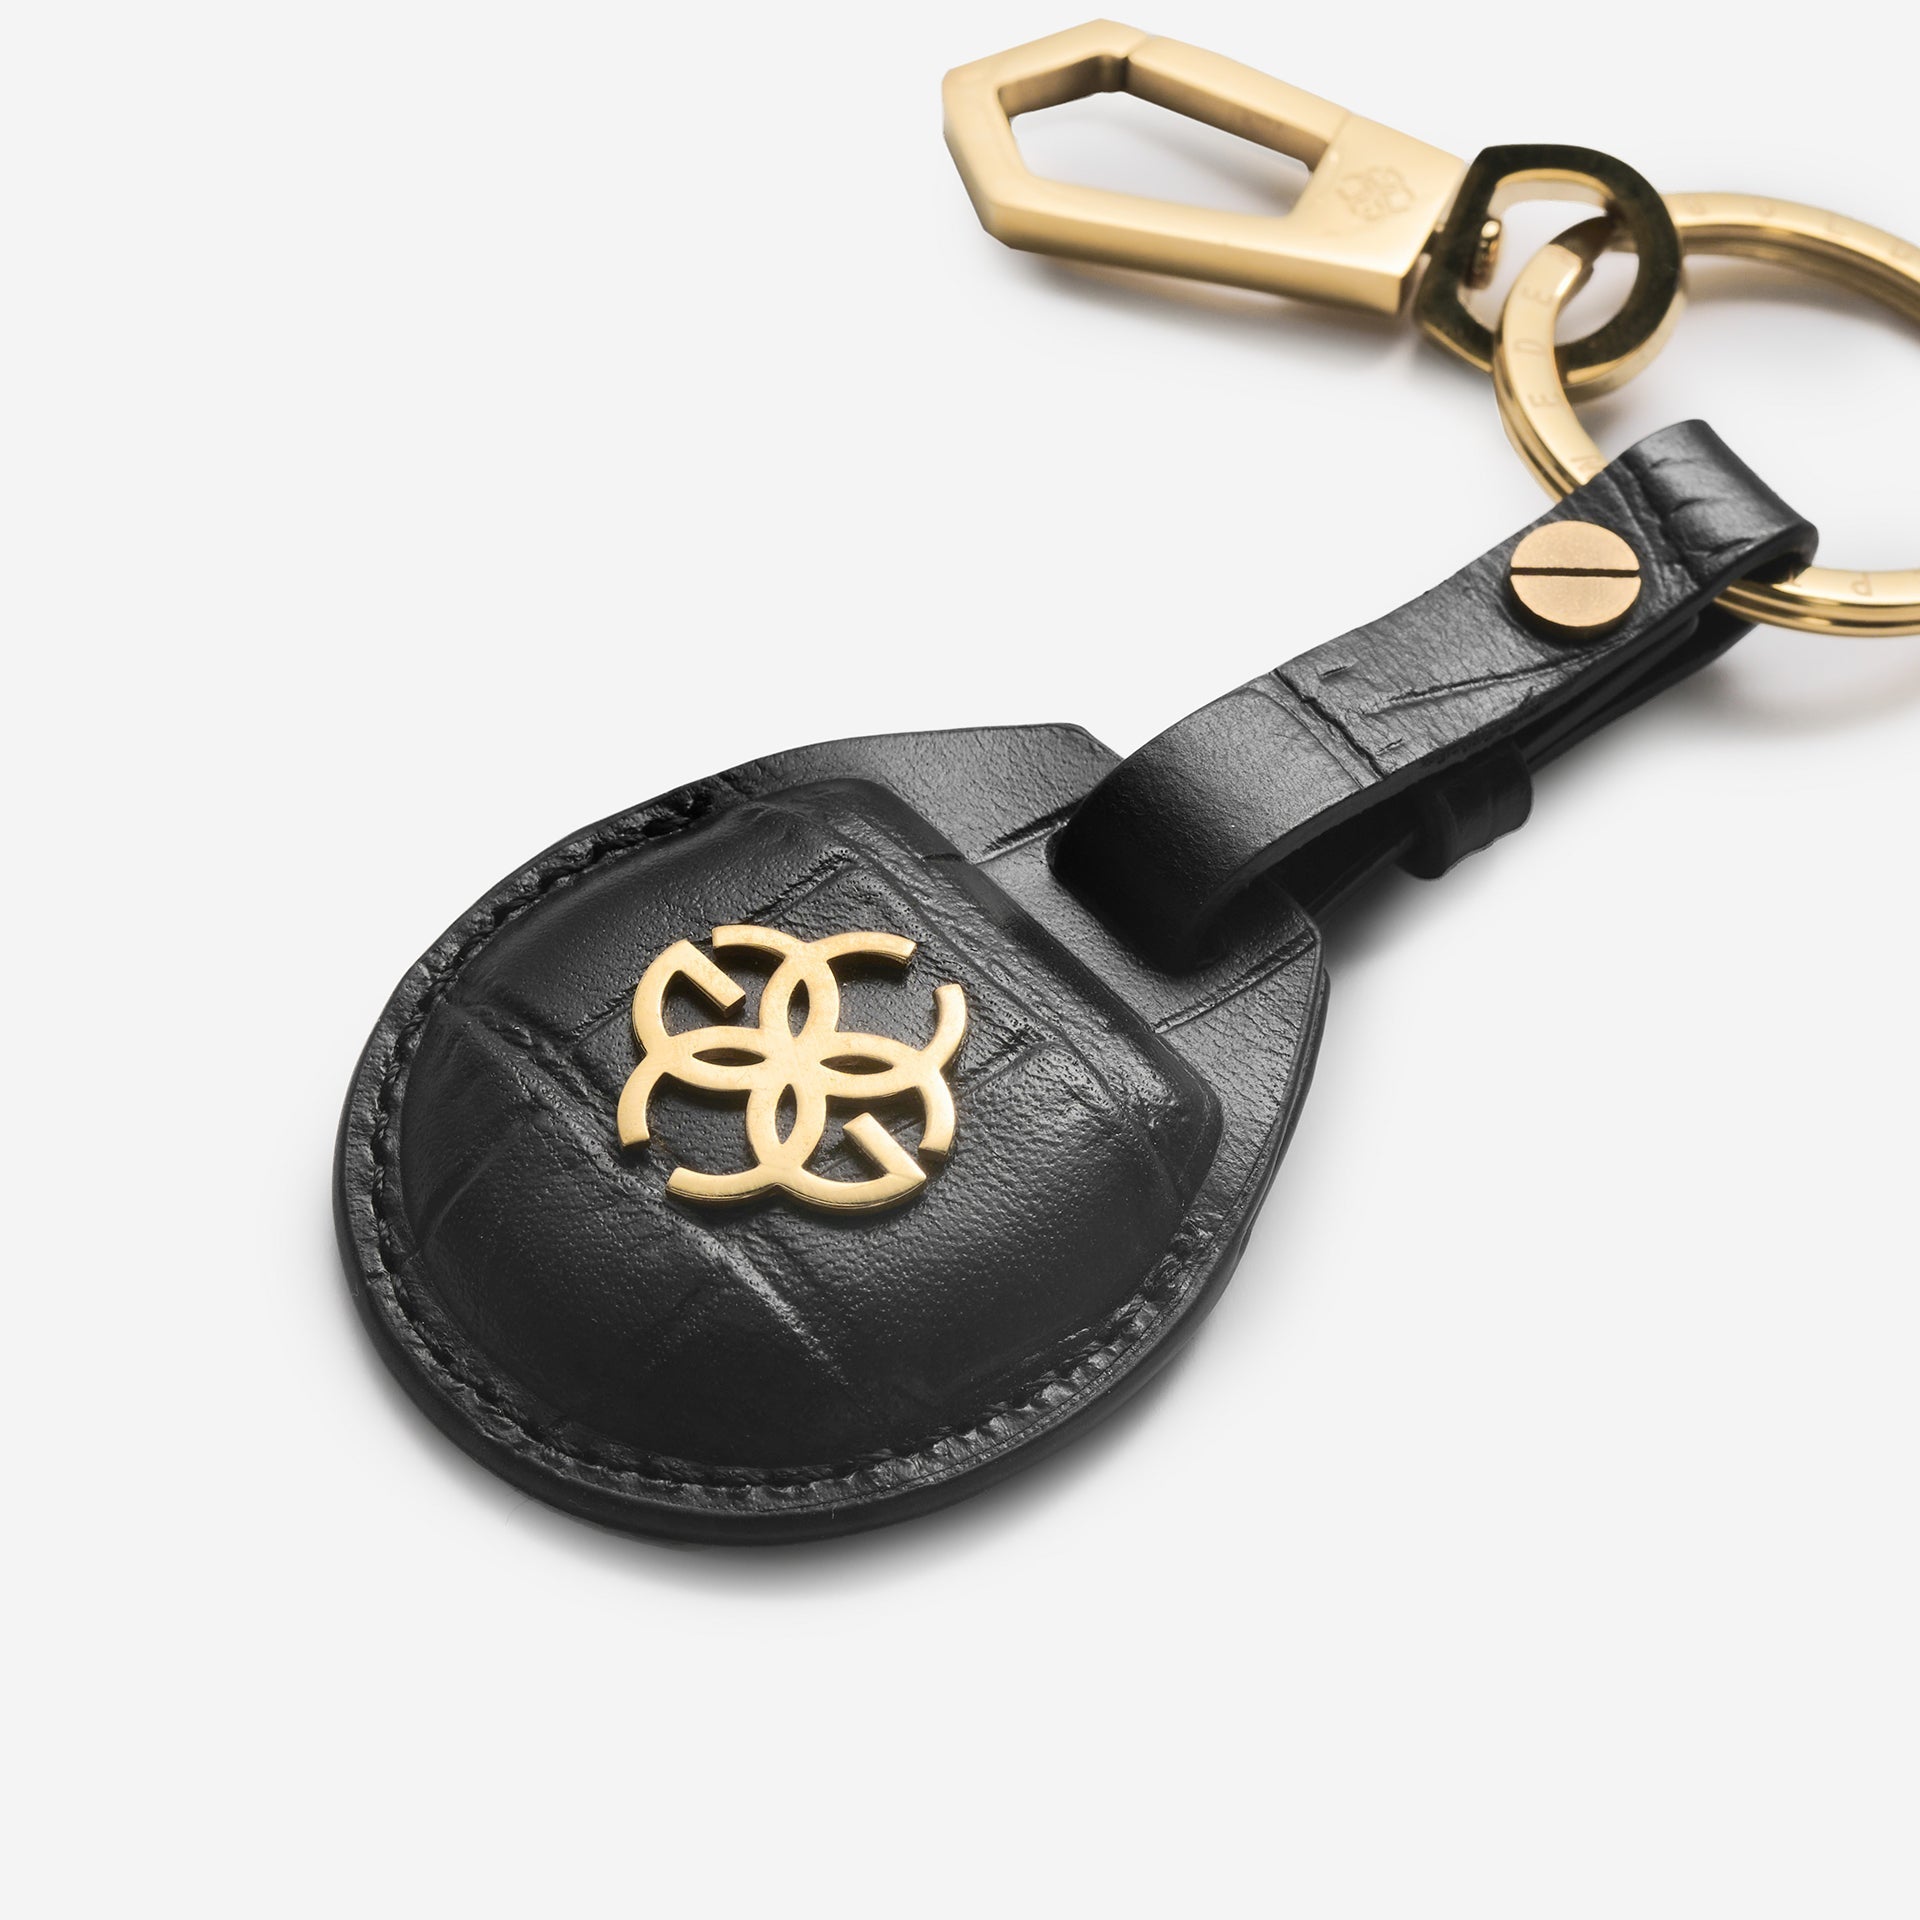 Golden Concept - 皮革配件 - 钥匙扣 - Airtag Croco